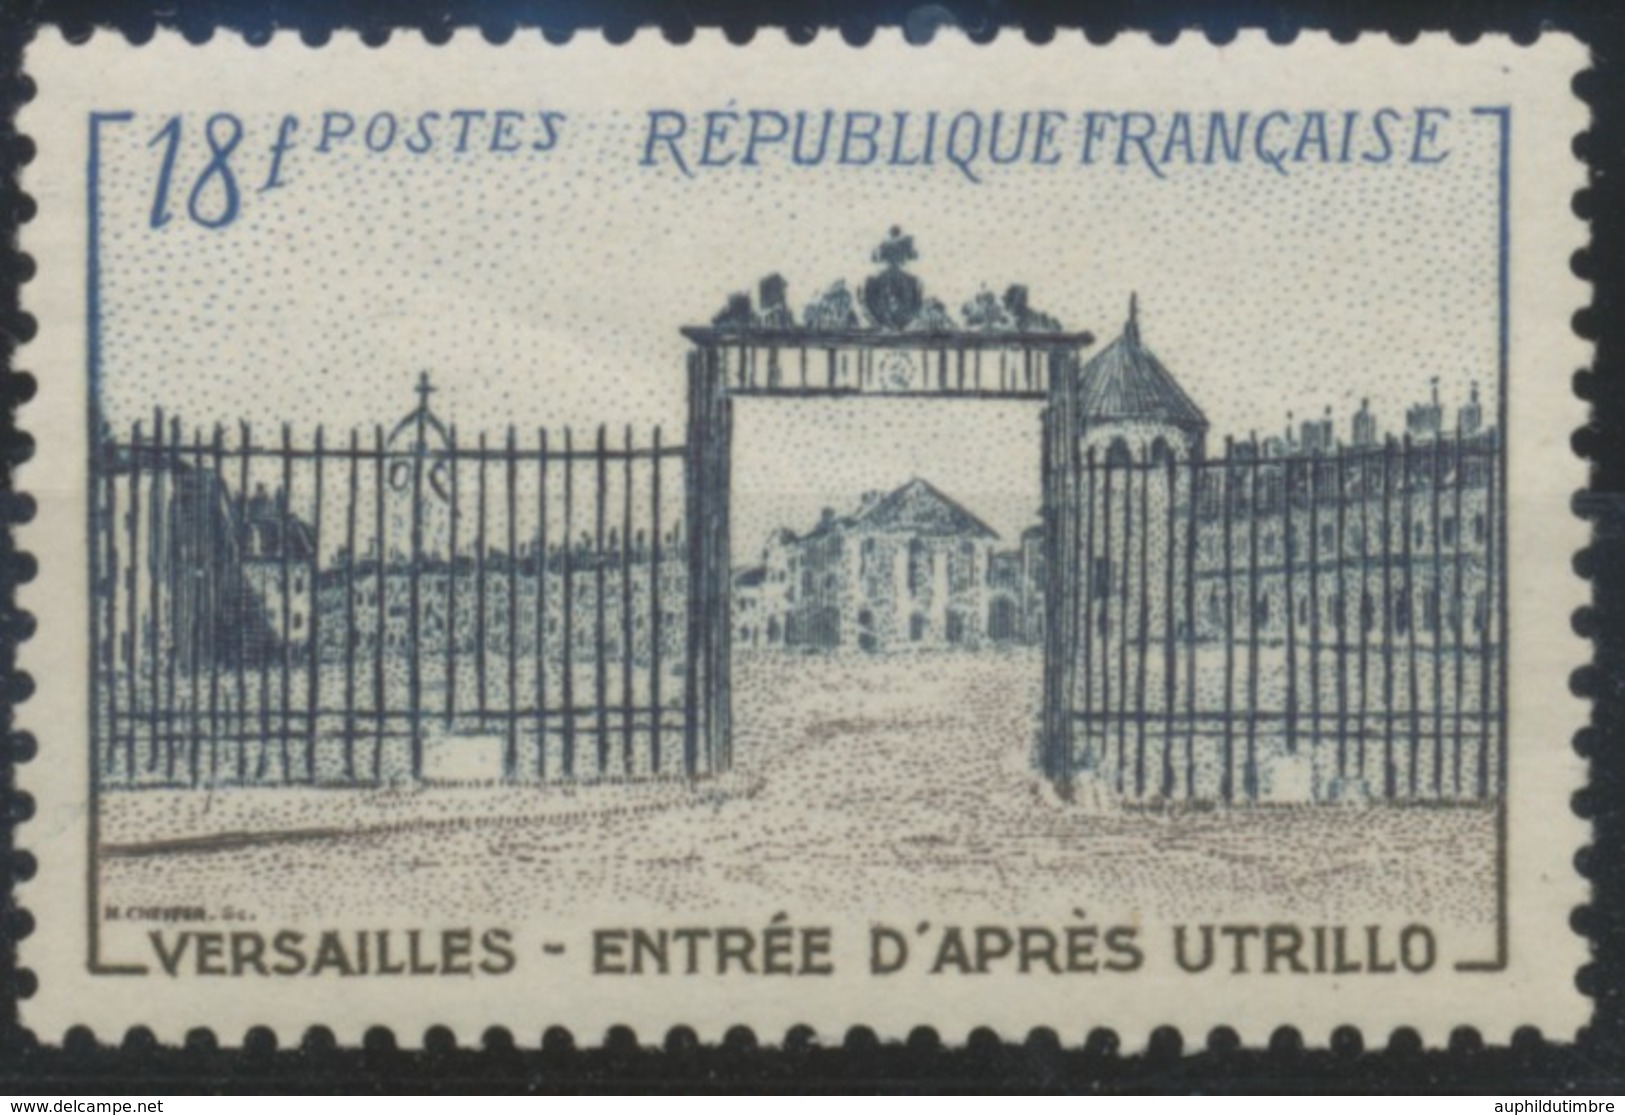 Grille D'entrée Du Château De Versailles. Type De 1952 (no 939) 18f. Brun-lilas, Bleu-noir Et Bleu. Neuf Luxe ** Y988 - Neufs